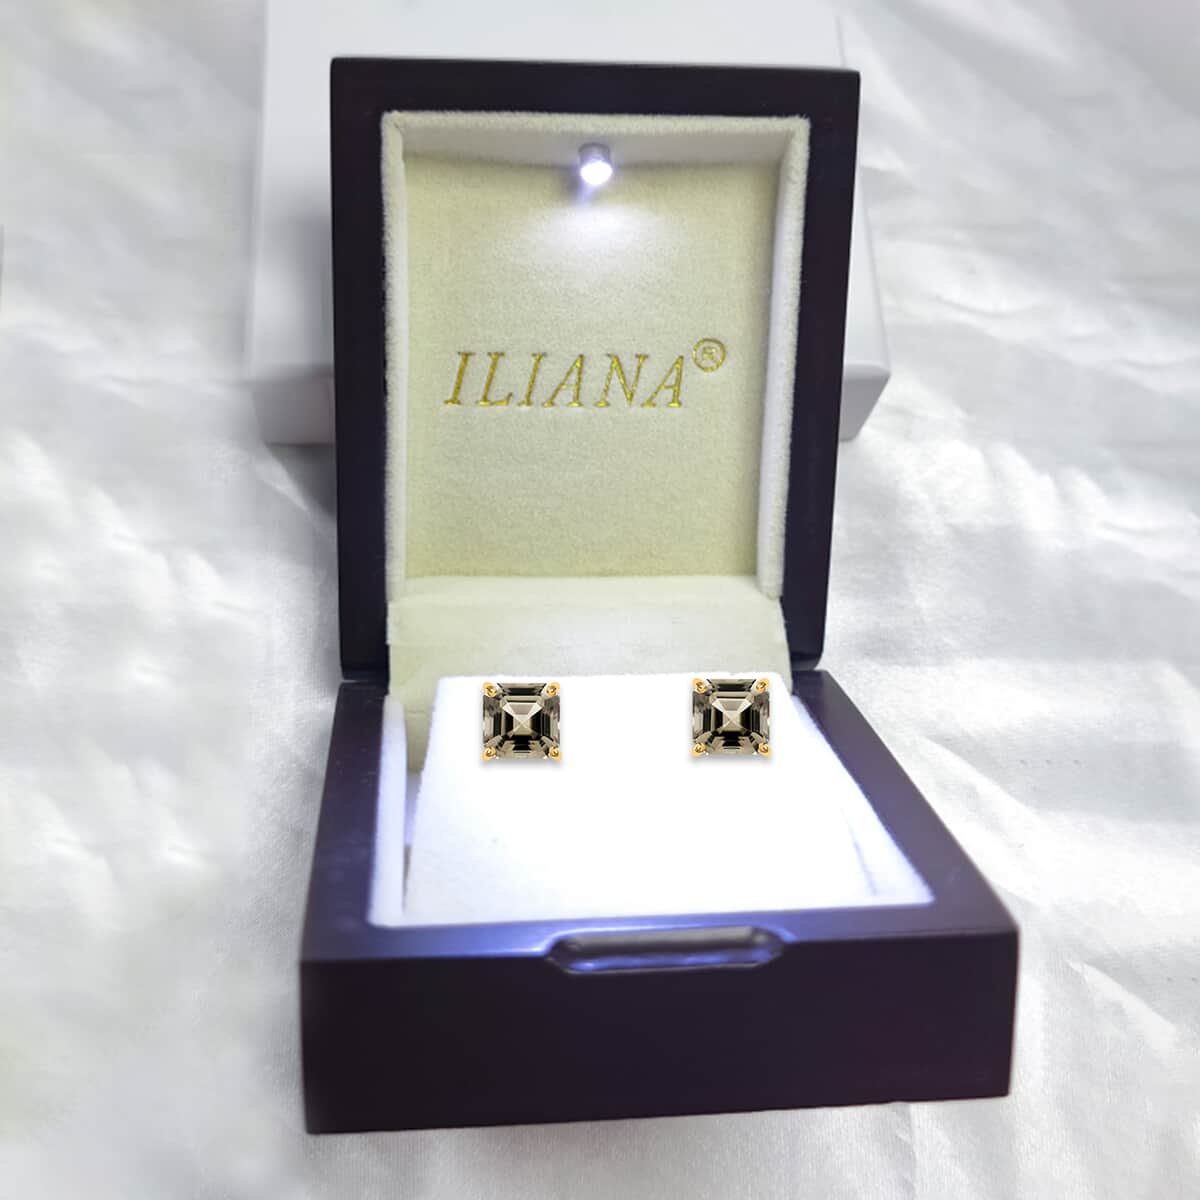 Iliana 18K Yellow Gold Asscher Cut AAA Turkizite Solitaire Stud Earrings, Solitaire Earrings, Turkizite Earrings, Asscher Cut Diaspore, 18K Yellow Gold Earrings 2.50 ctw image number 6